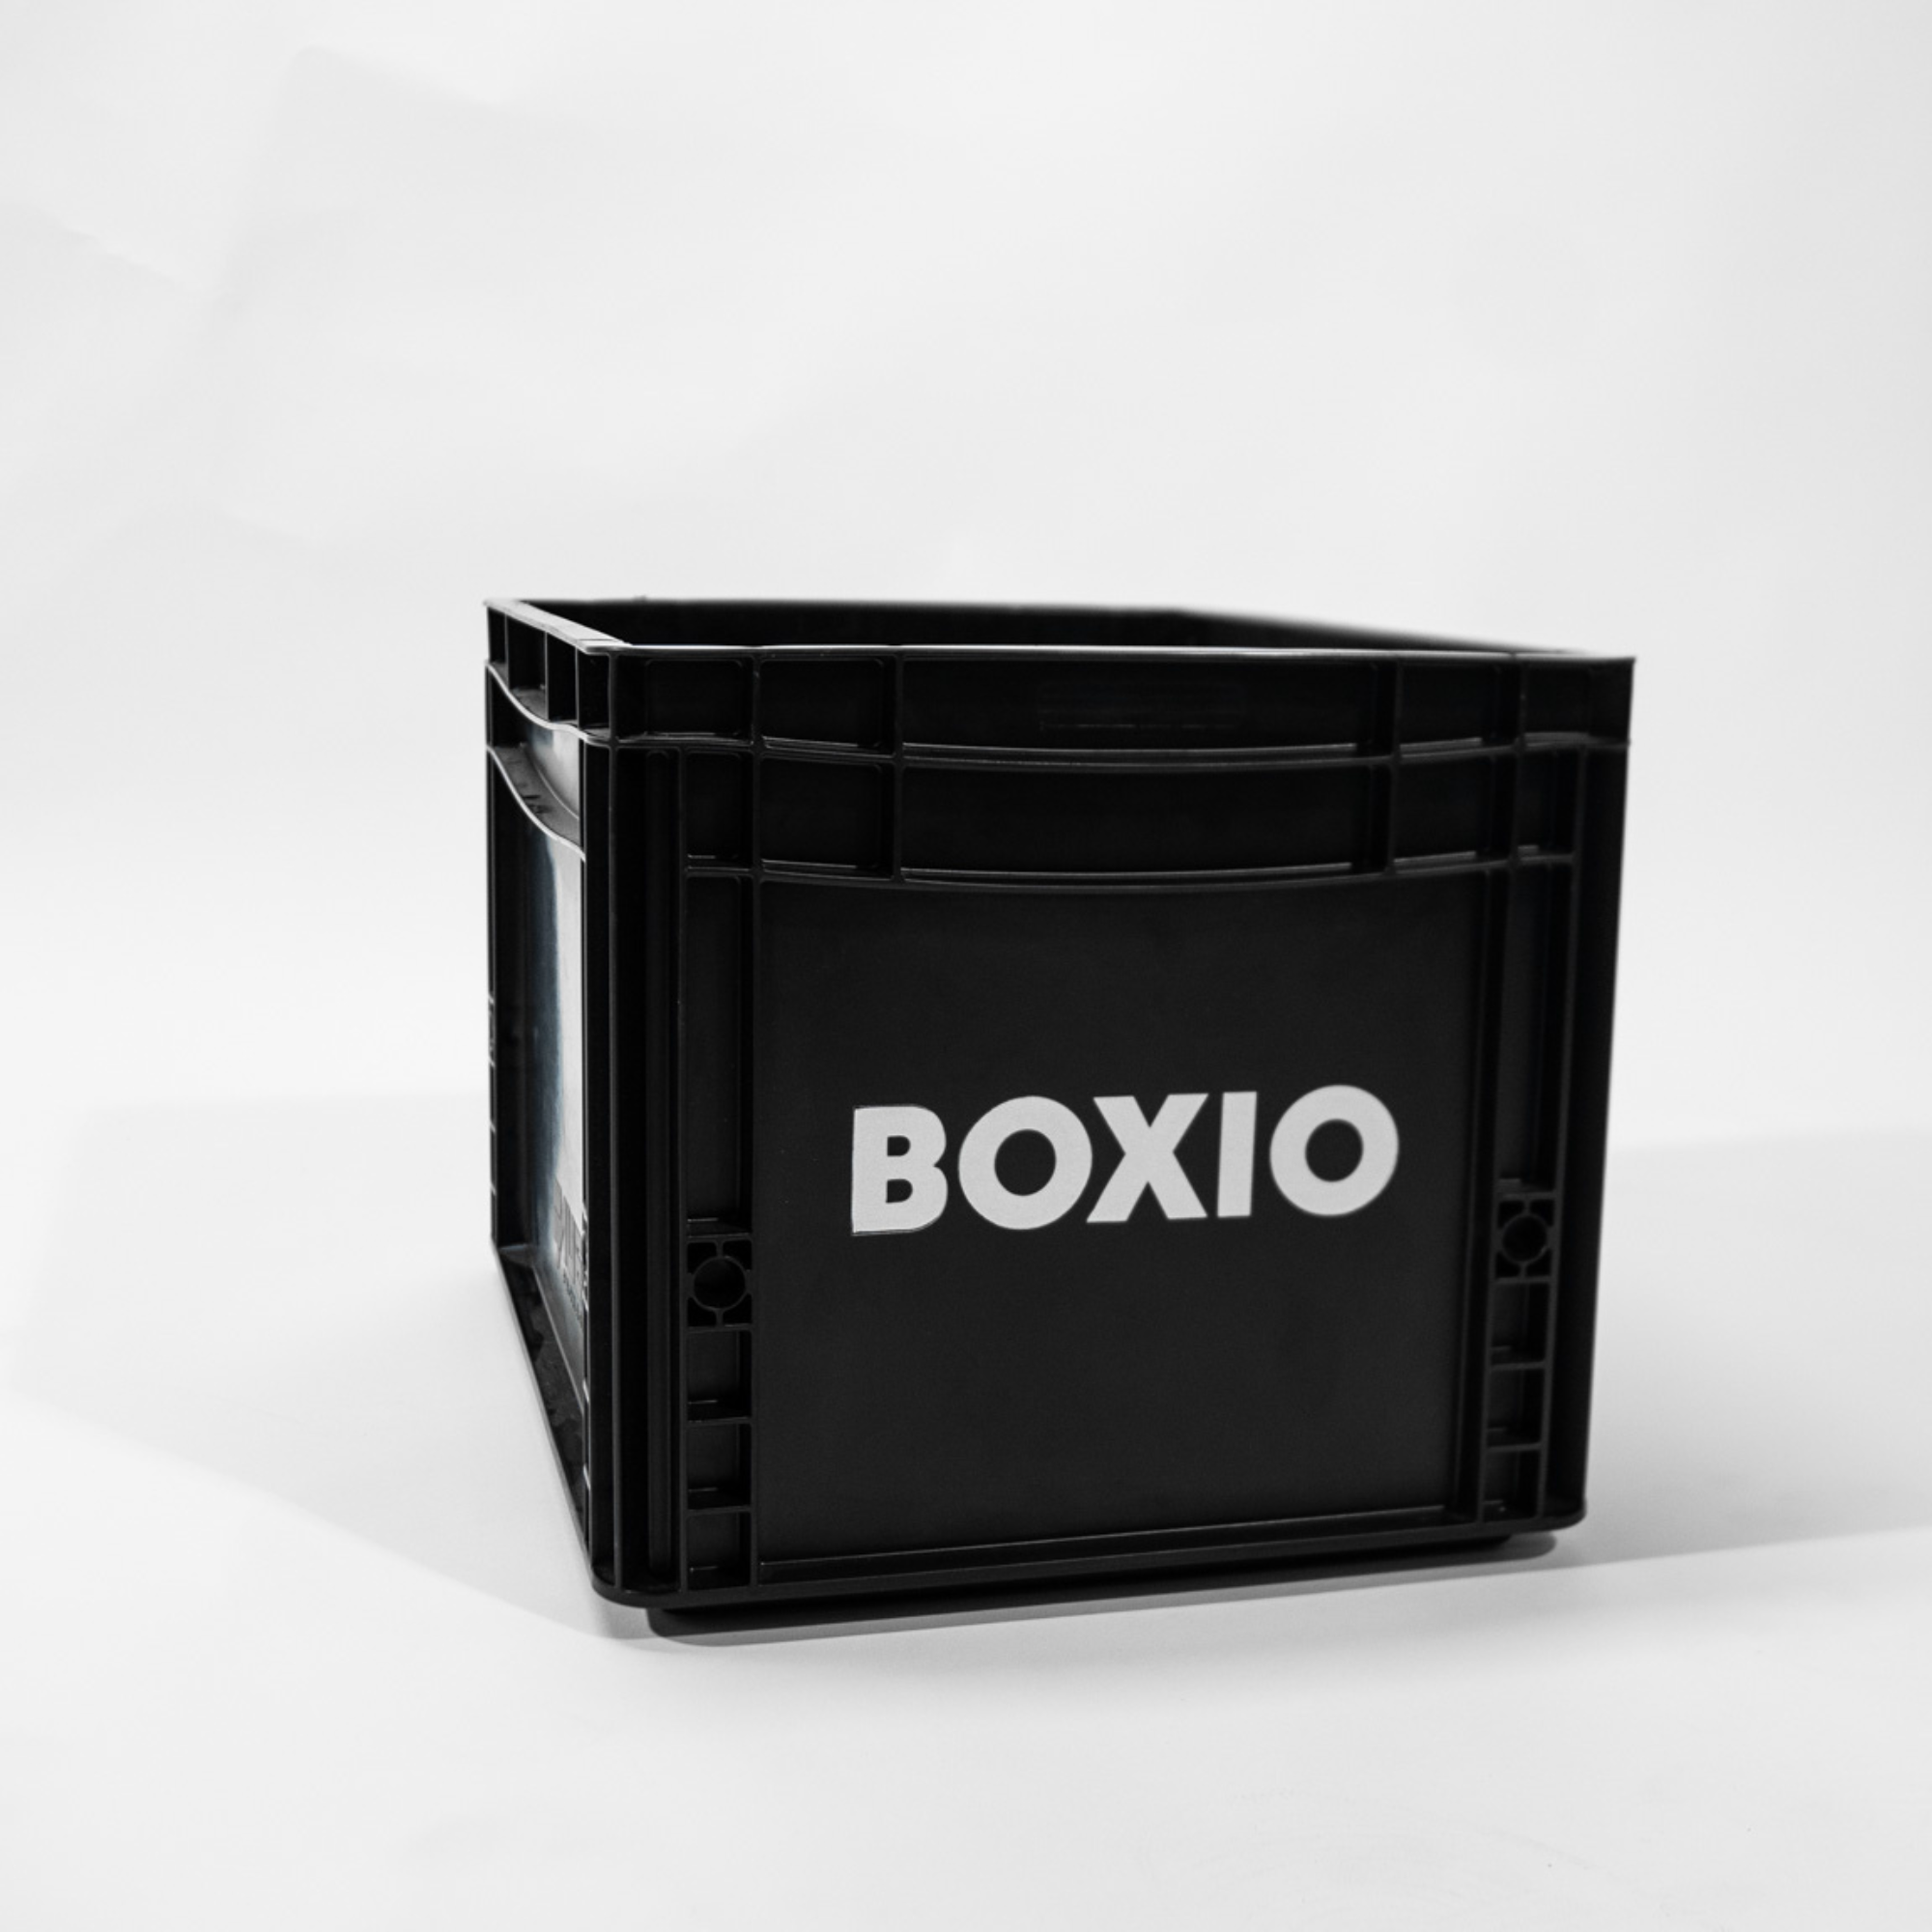 Eurobox "BOXIO" com furos para BOXIO - TOILET & WASH